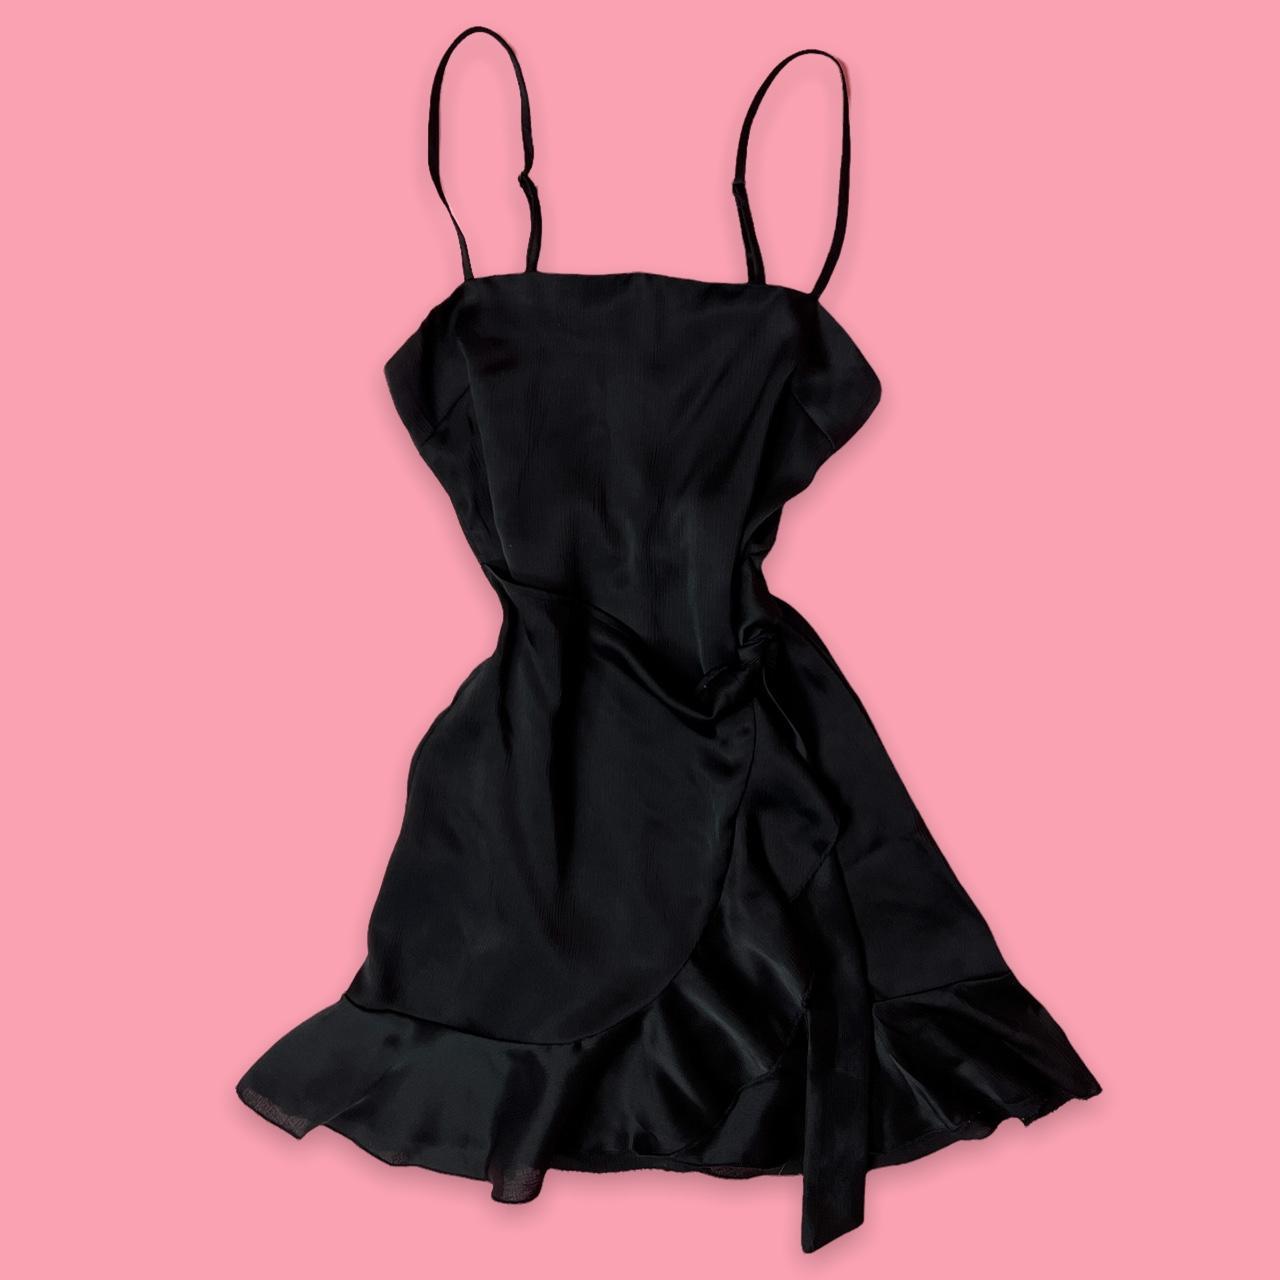 🧨Ruffled Coquette Mini Dress 🧨Flirty black mini... - Depop